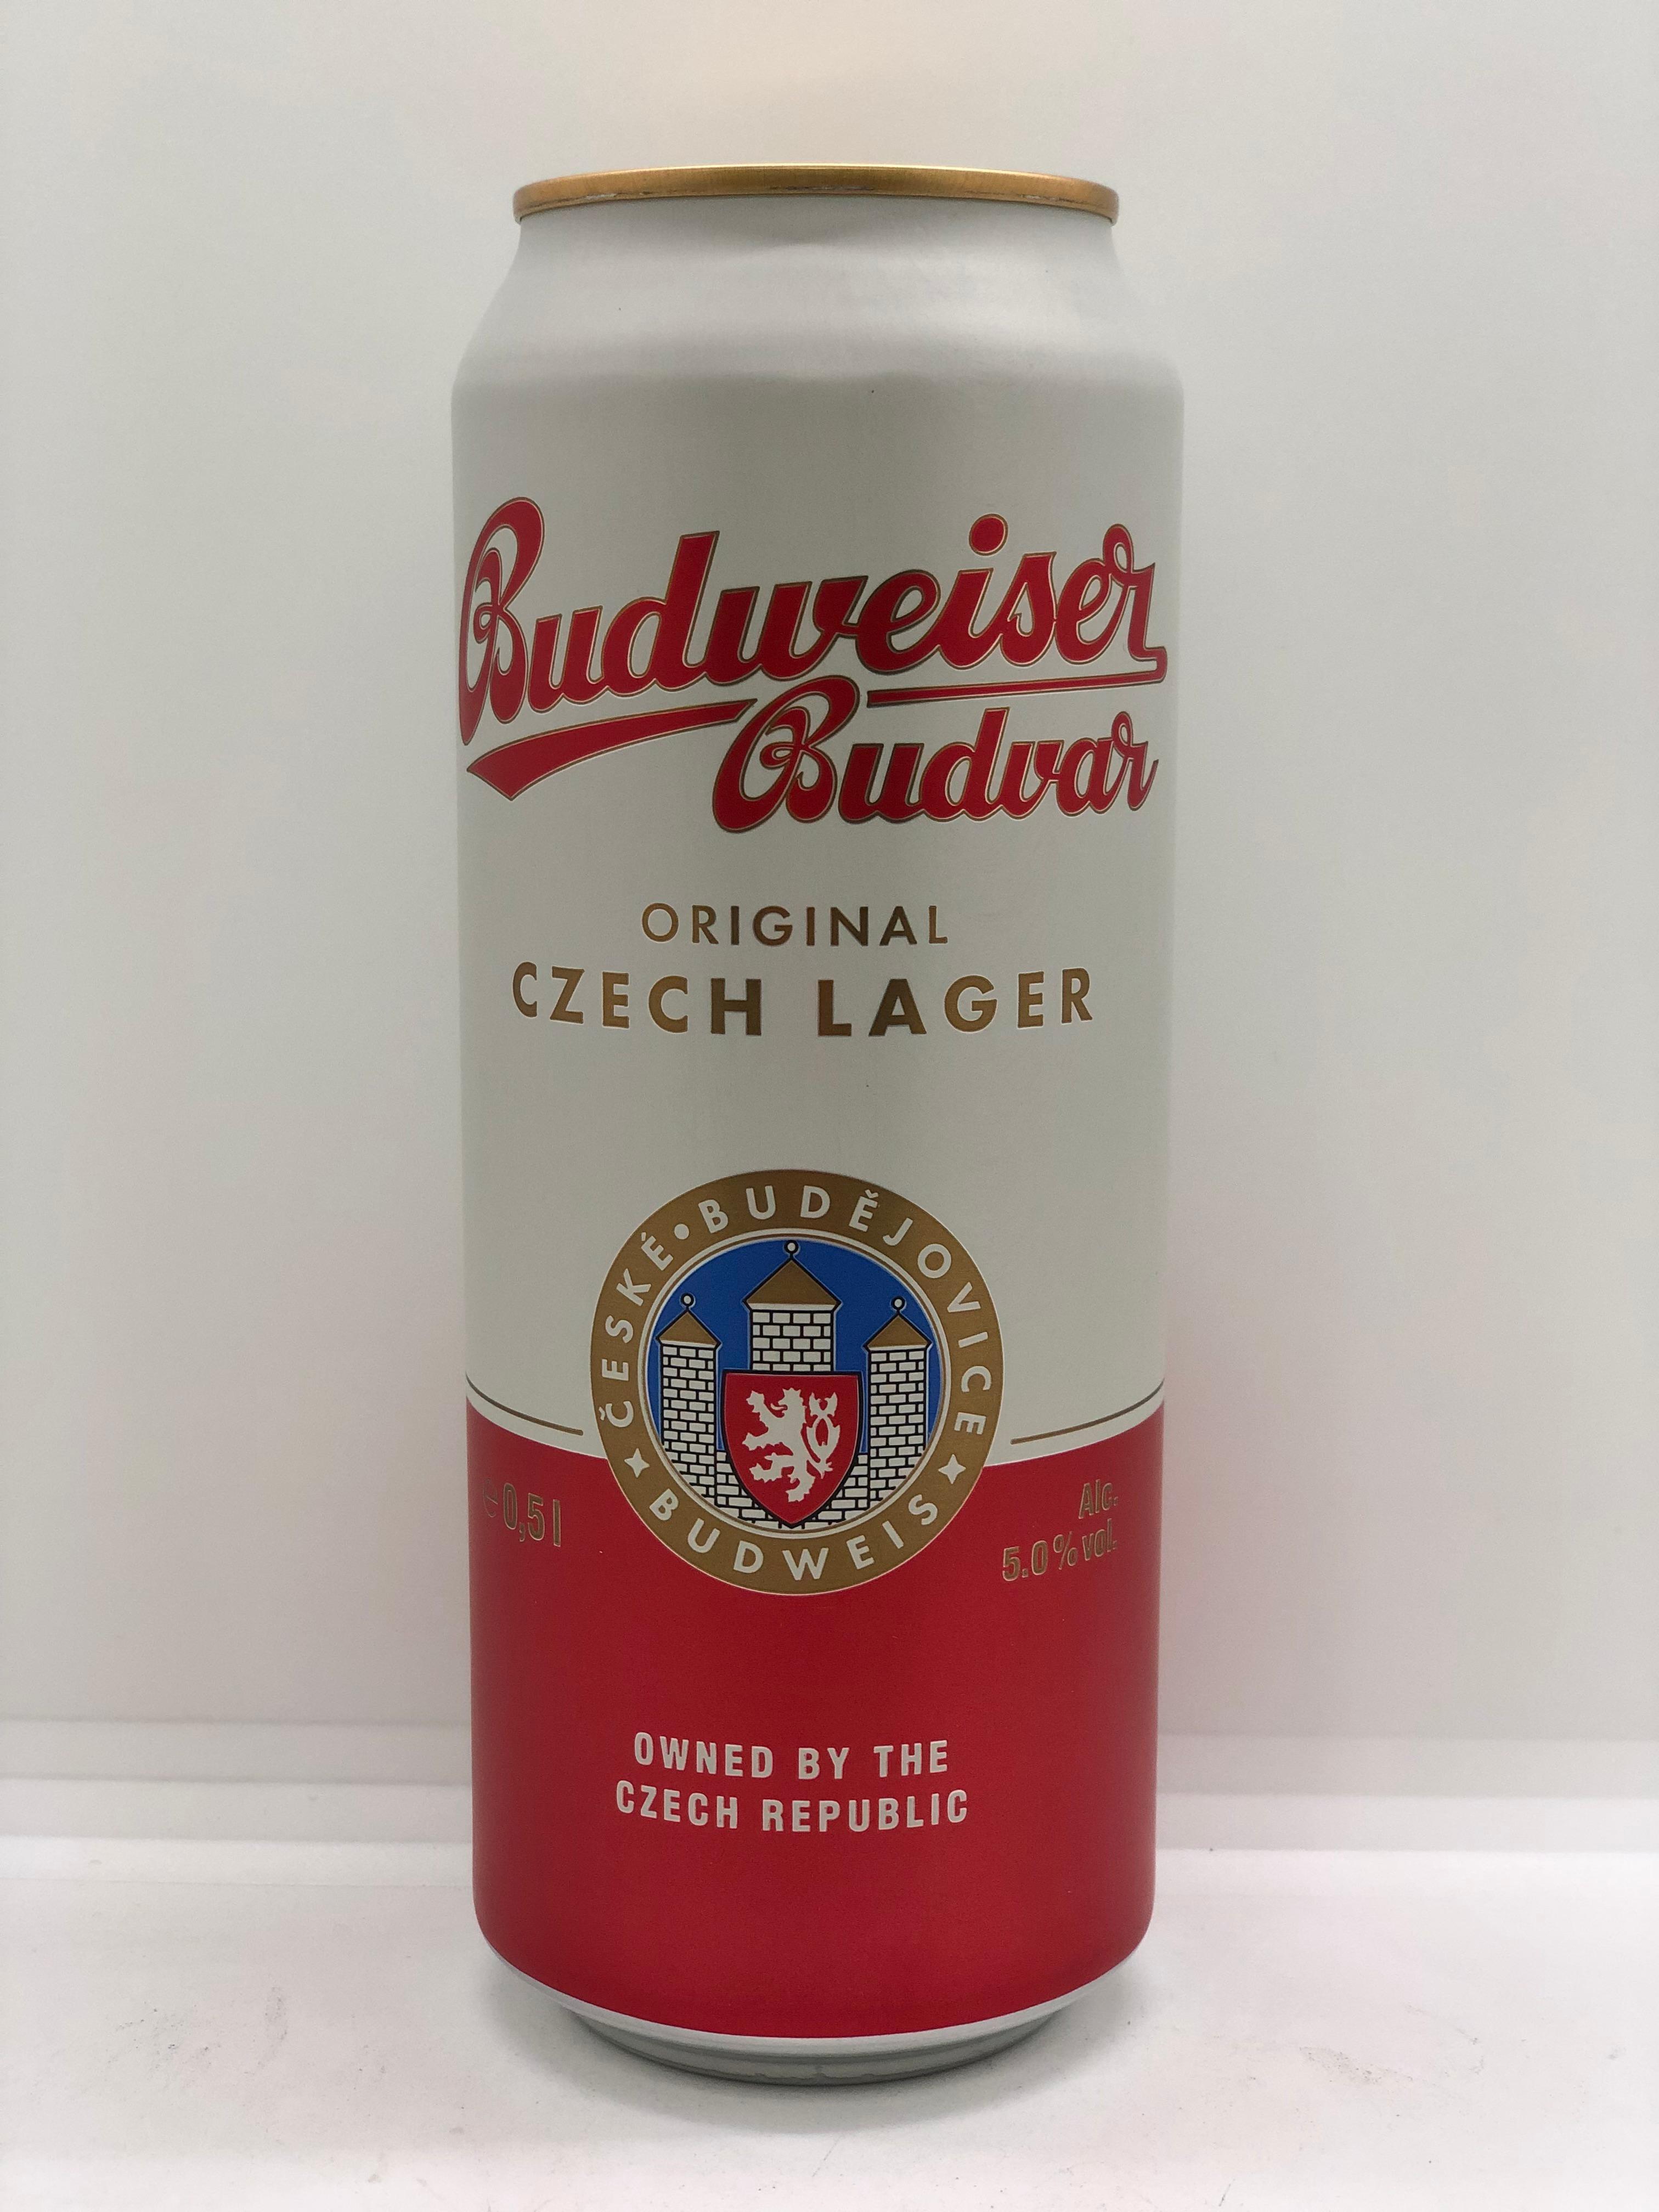 Пиво Budweiser Budvar светлое пастеризованное фильтрованное 500 мл., ж/б